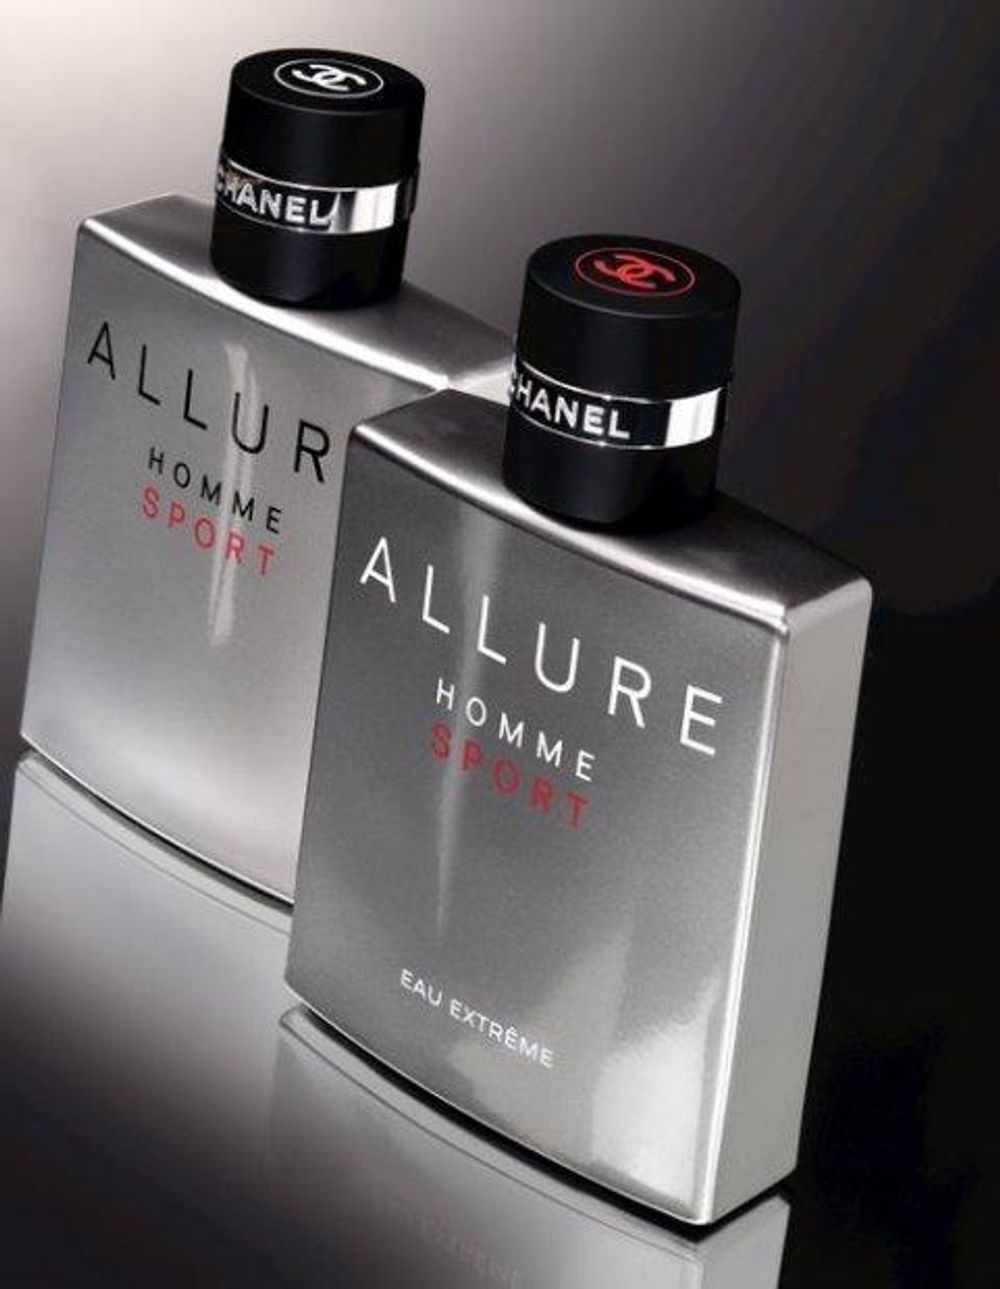 Ecume de Rose Les Parfums de Rosine perfume - a fragrance for women 2002